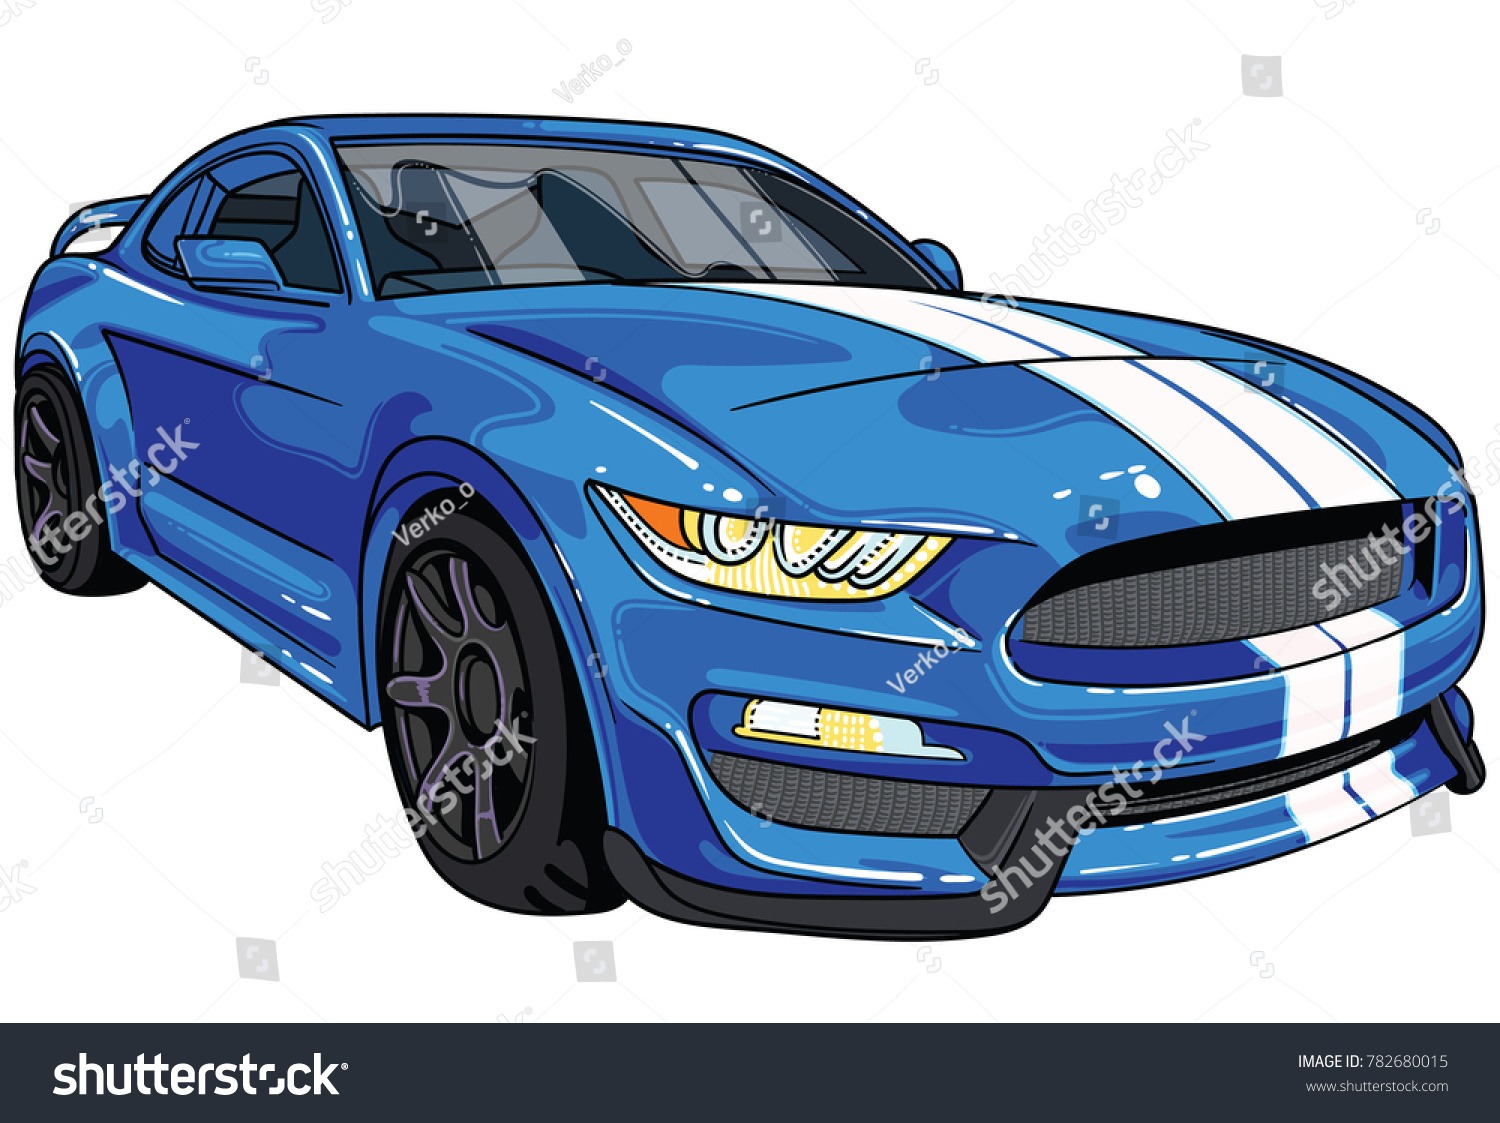 車のフードに2本の白い帯を持つ 青いスポーツカーのマスタングのイラスト すべてのイラストは使いやすく 高度にカスタマイズ可能で ニーズに合った論理的な階層になっています のベクター画像素材 ロイヤリティフリー